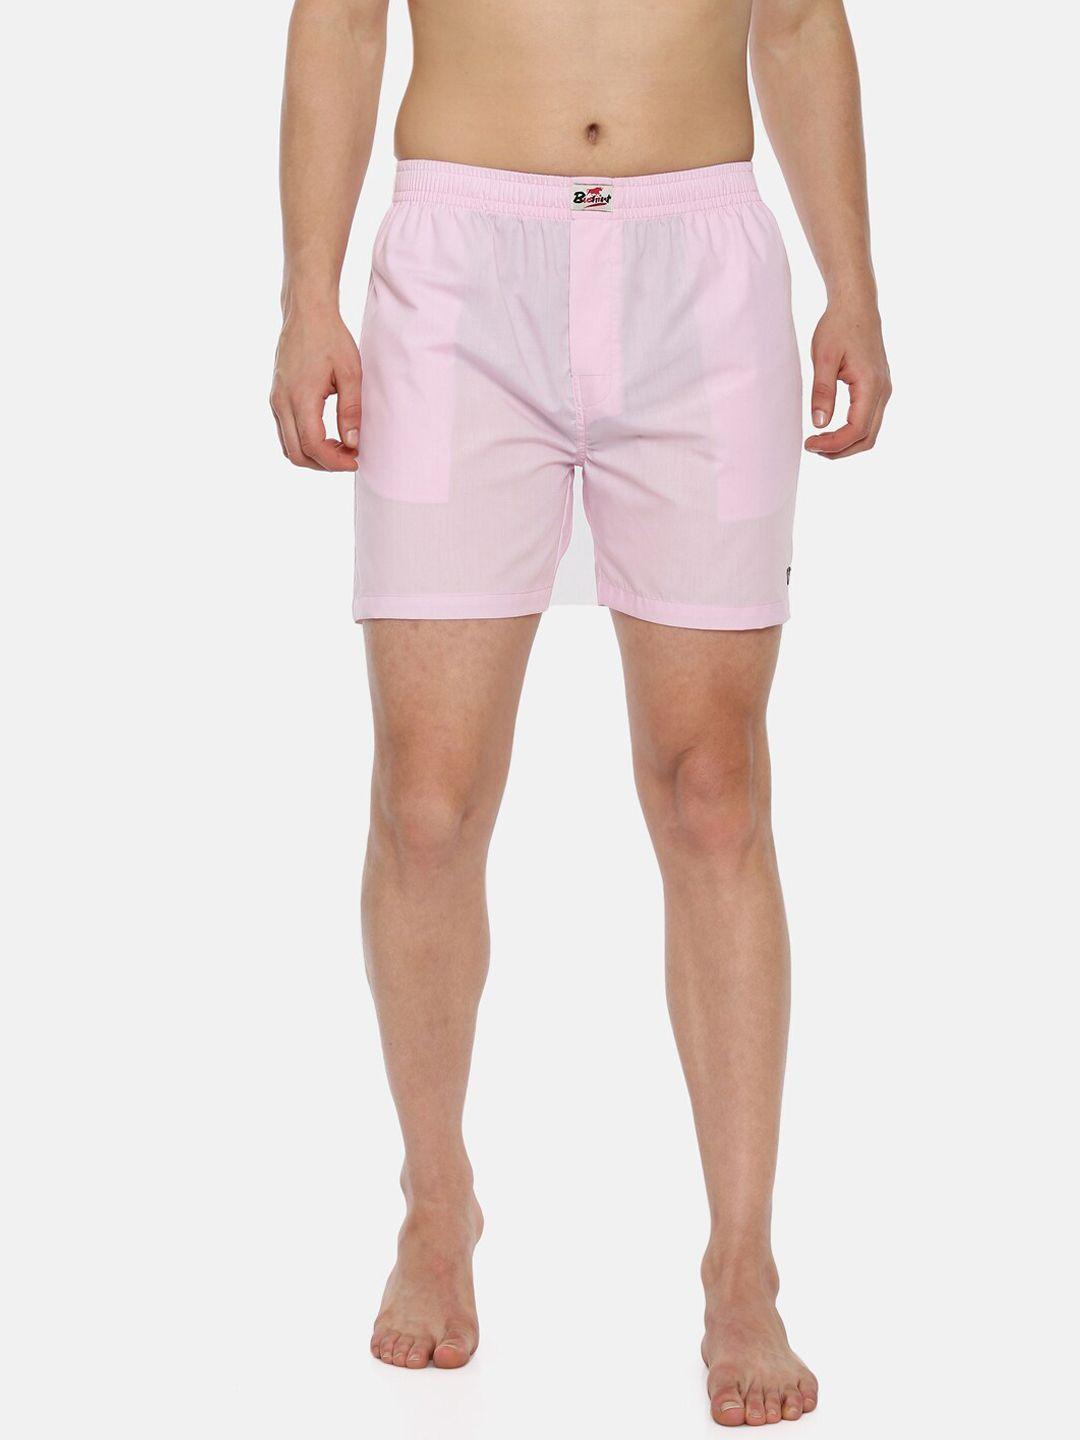 bushirt men pink solid pure cotton boxers